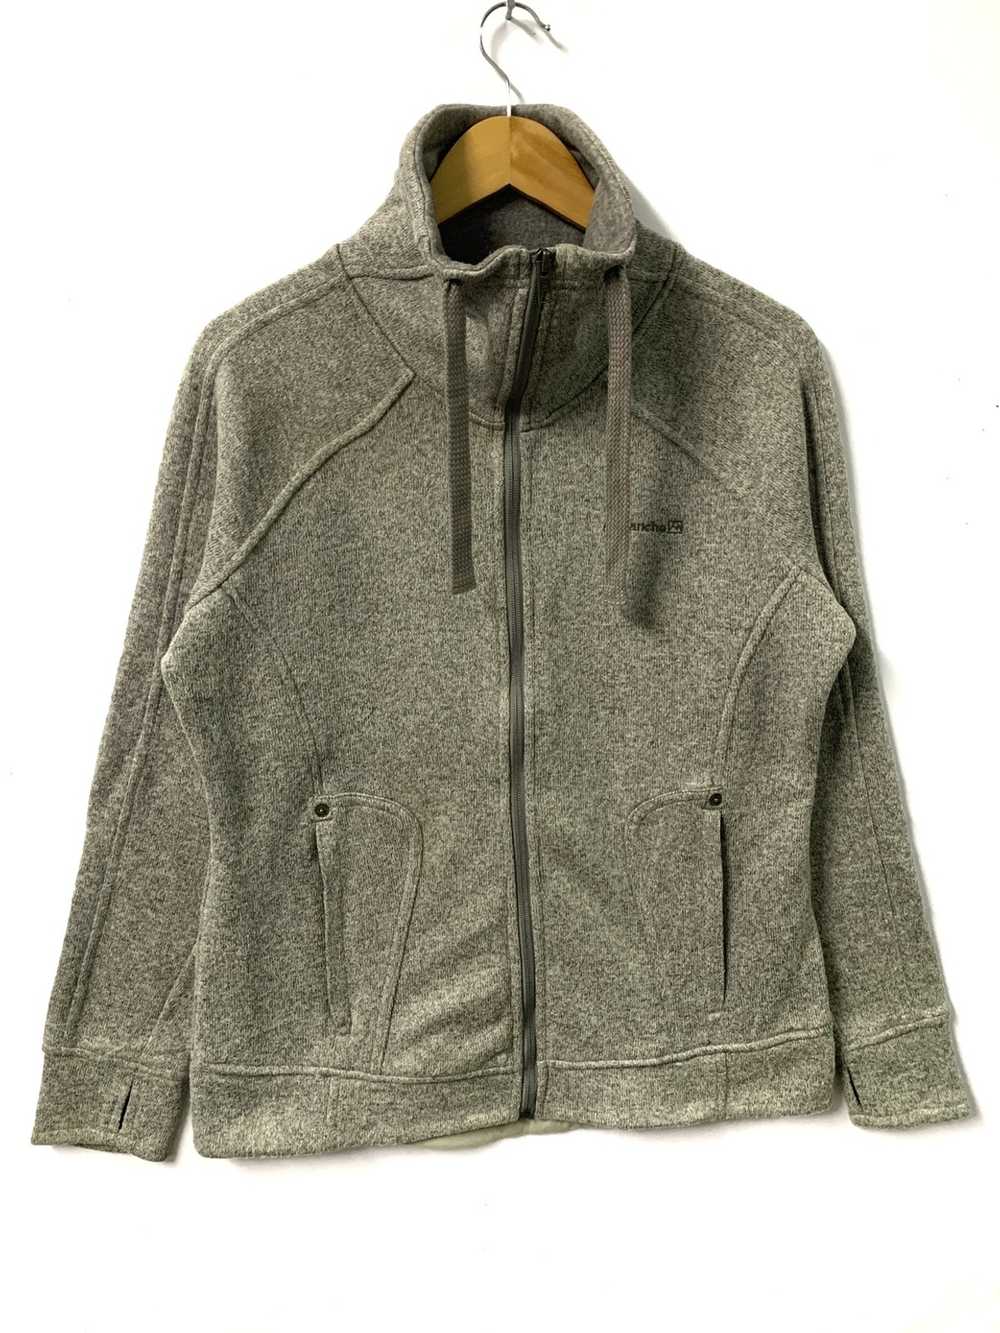 avalanche outdoor supply company mens fleece jacket